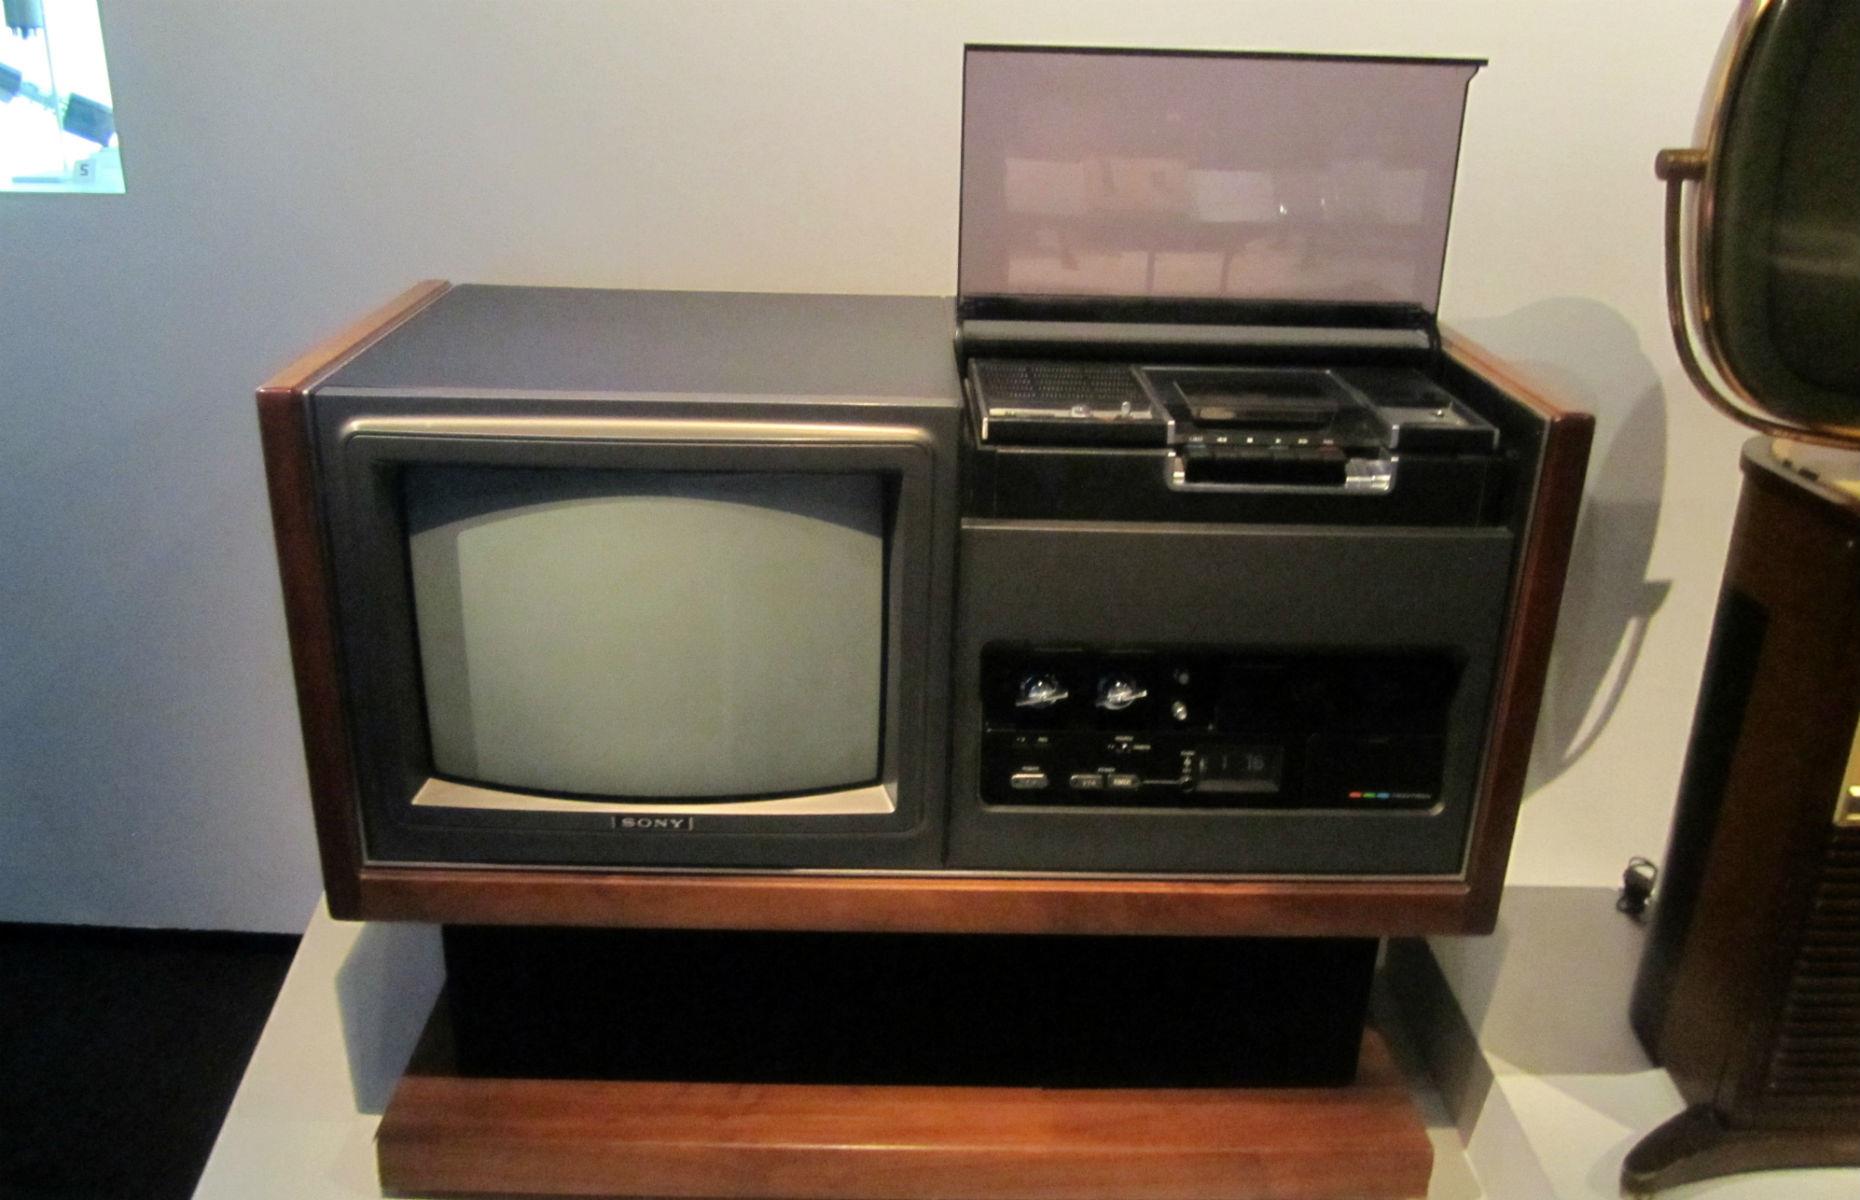 1968: colour TV set